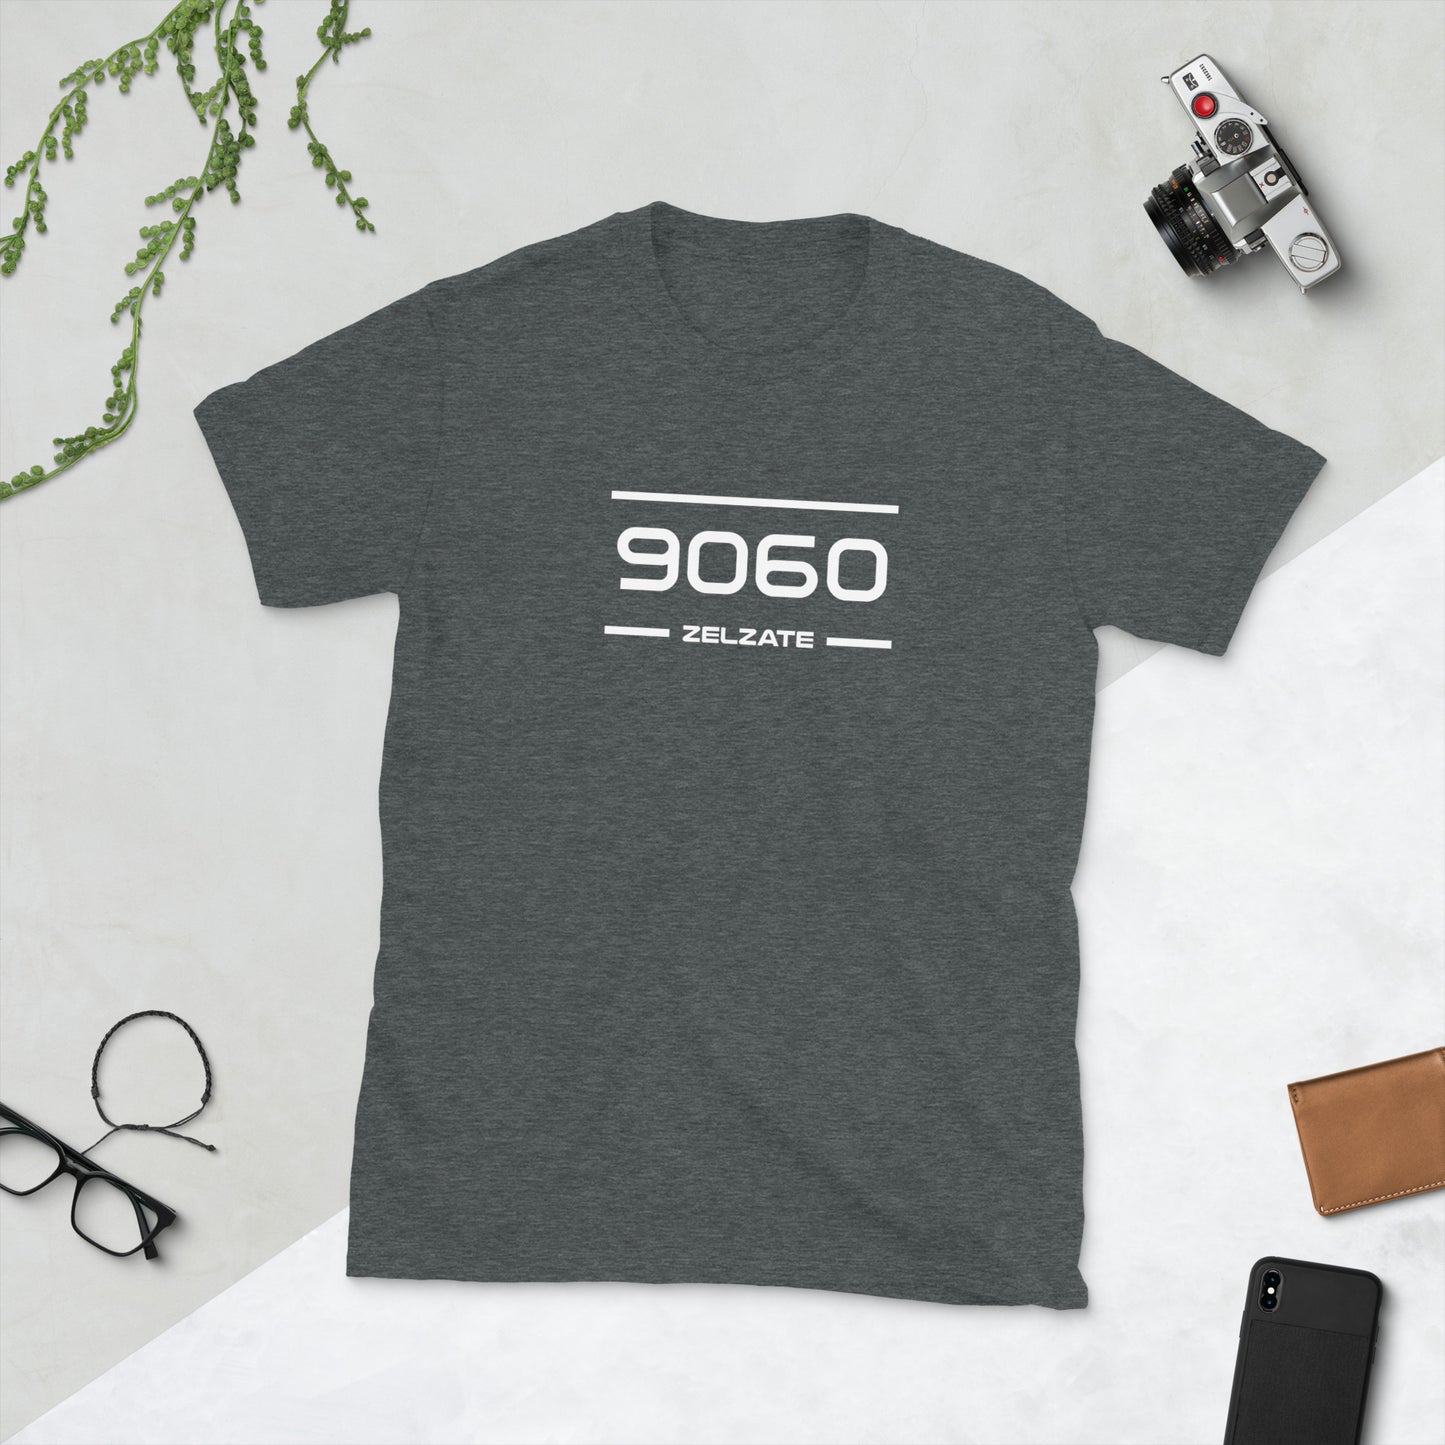 T-Shirt - 9060 - Zelzate